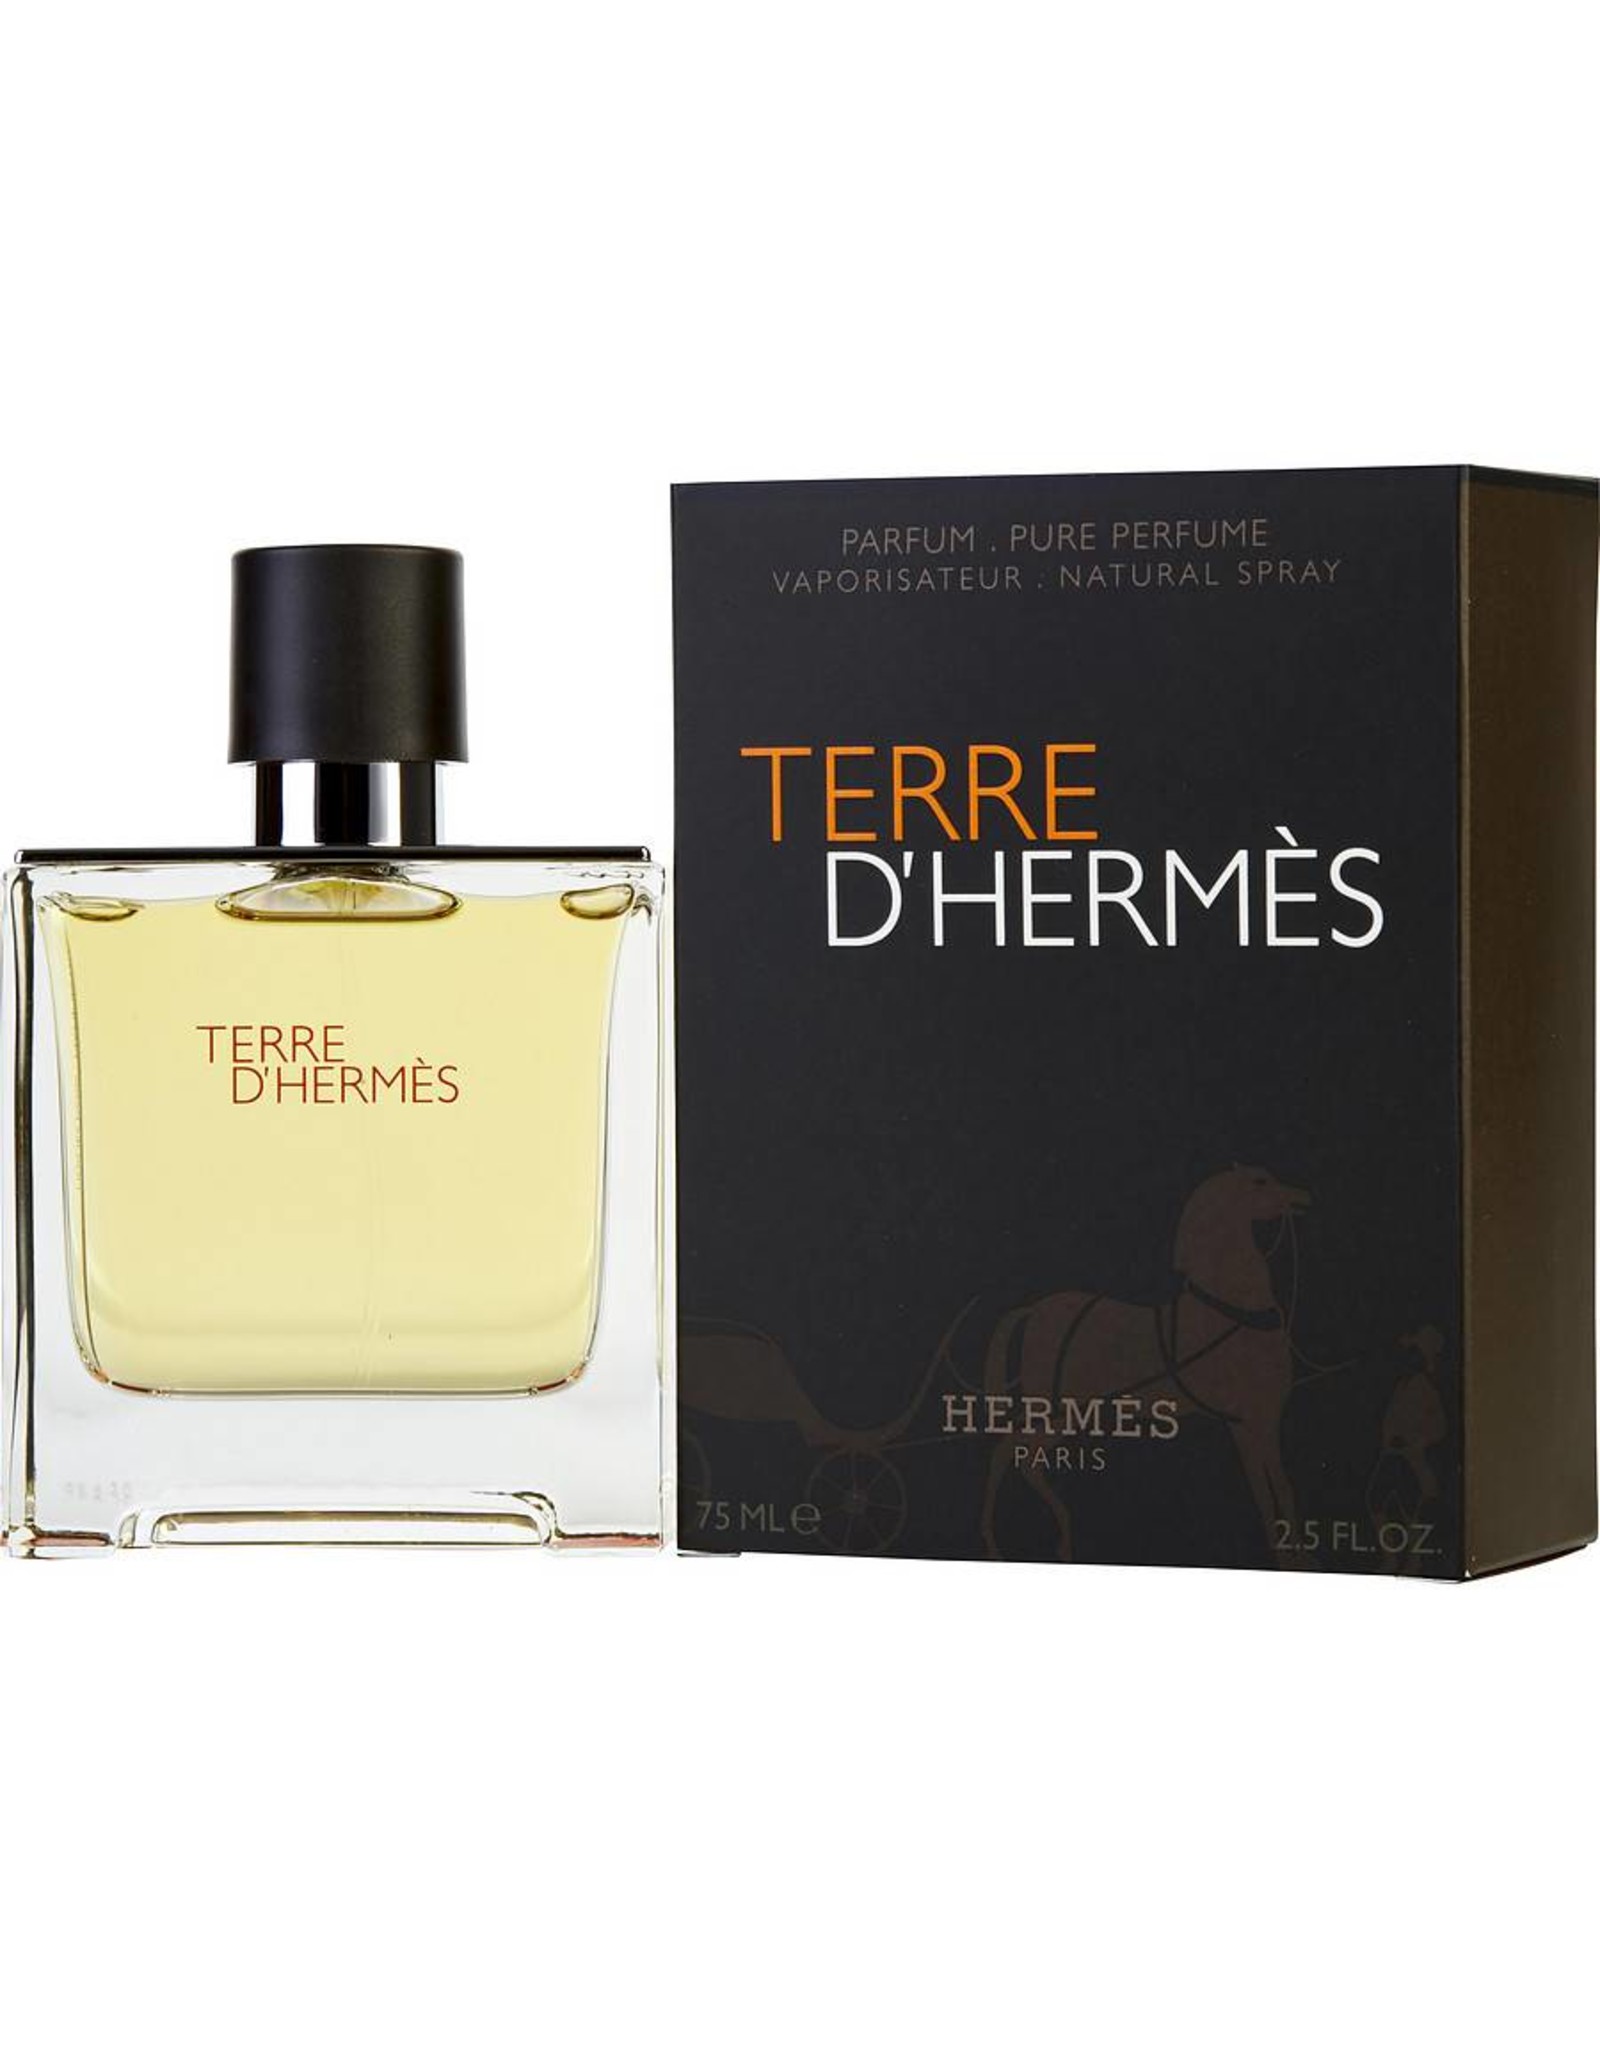 HERMES HERMES TERRE D’HERMES PURE PARFUM